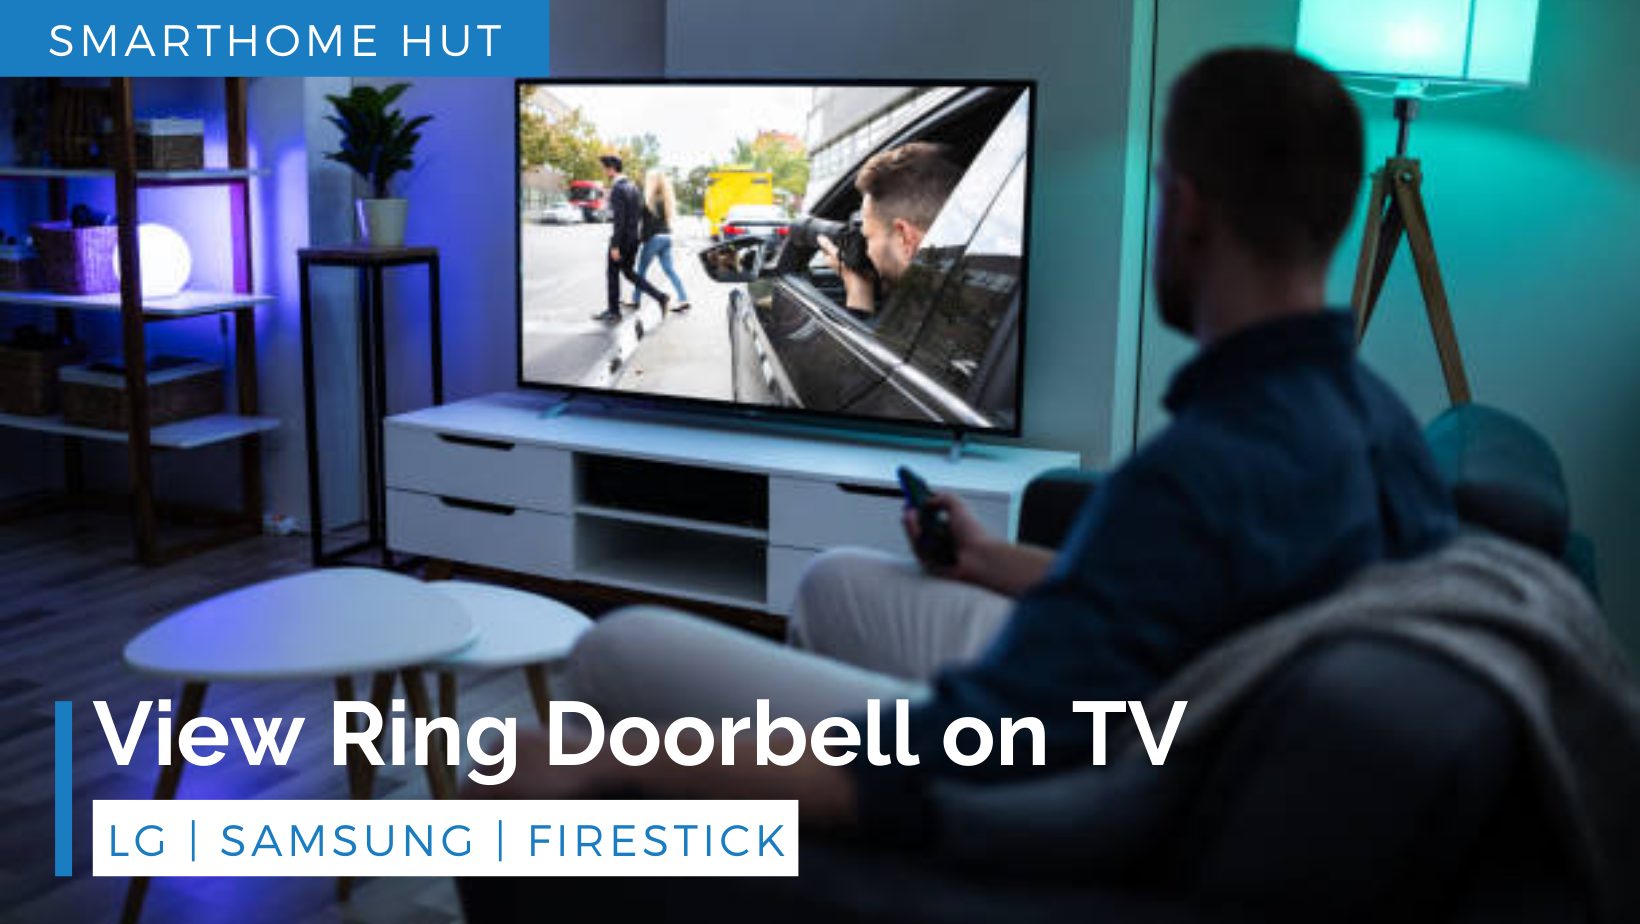 View Ring Doorbell on TV